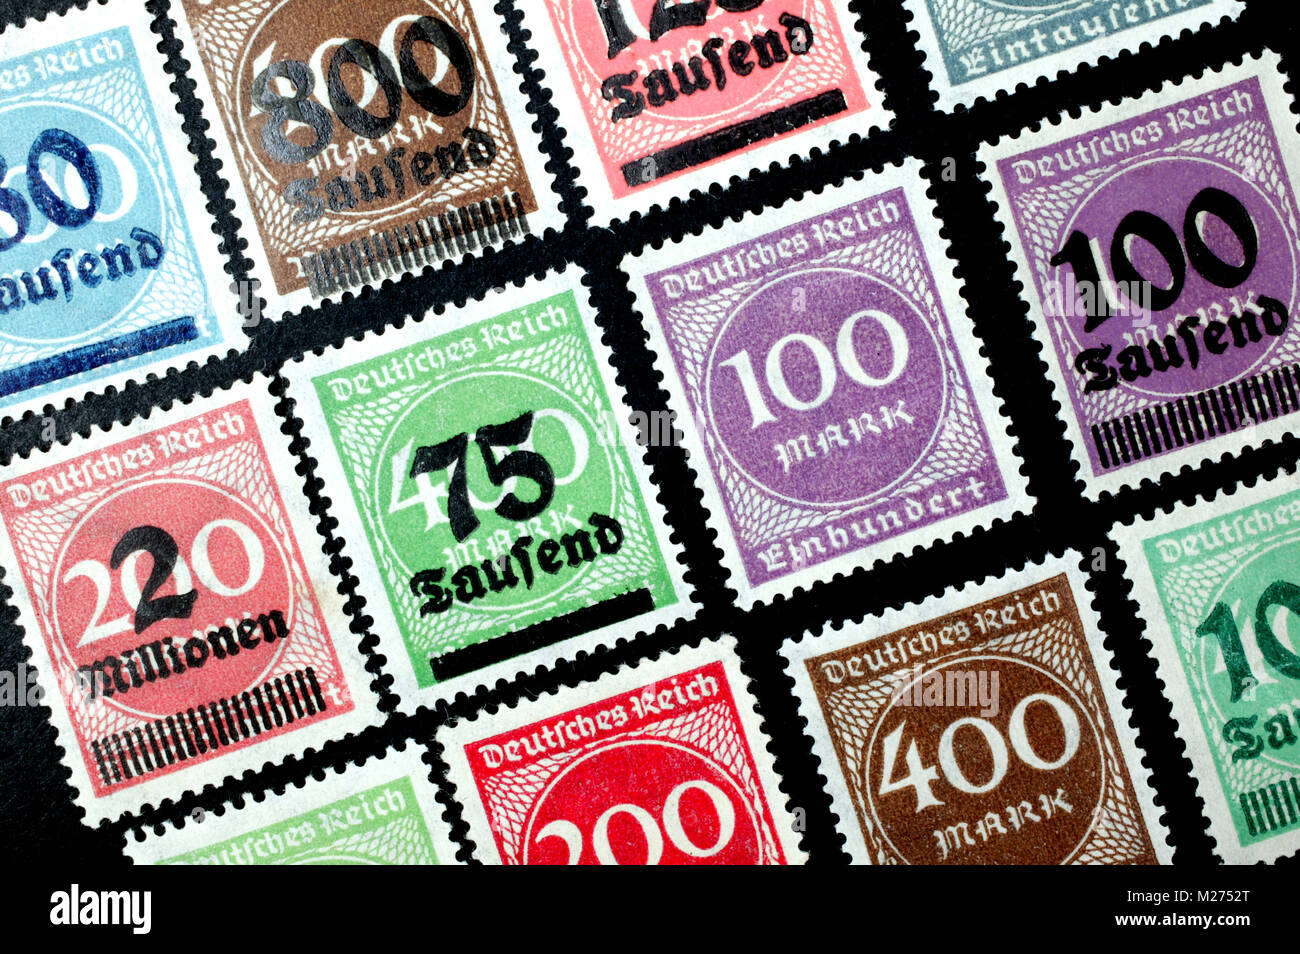 Inflation Briefmarken, Deutsches Reich Stockfotografie - Alamy